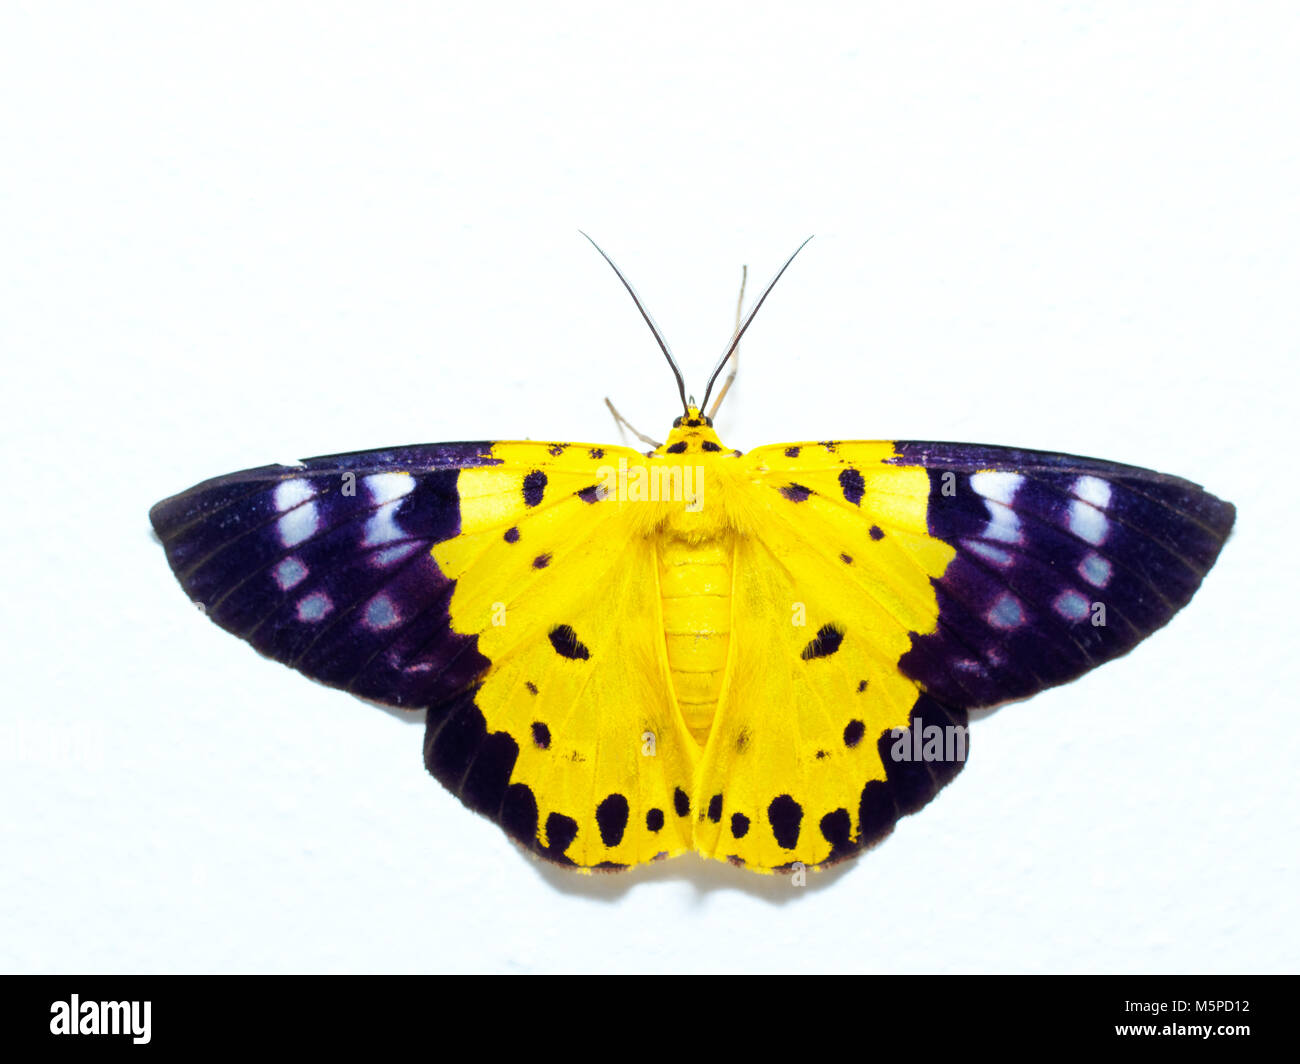 Giallo, nero e bianco, falena una specie di insetto simile a farfalla, isolati su sfondo bianco Foto Stock